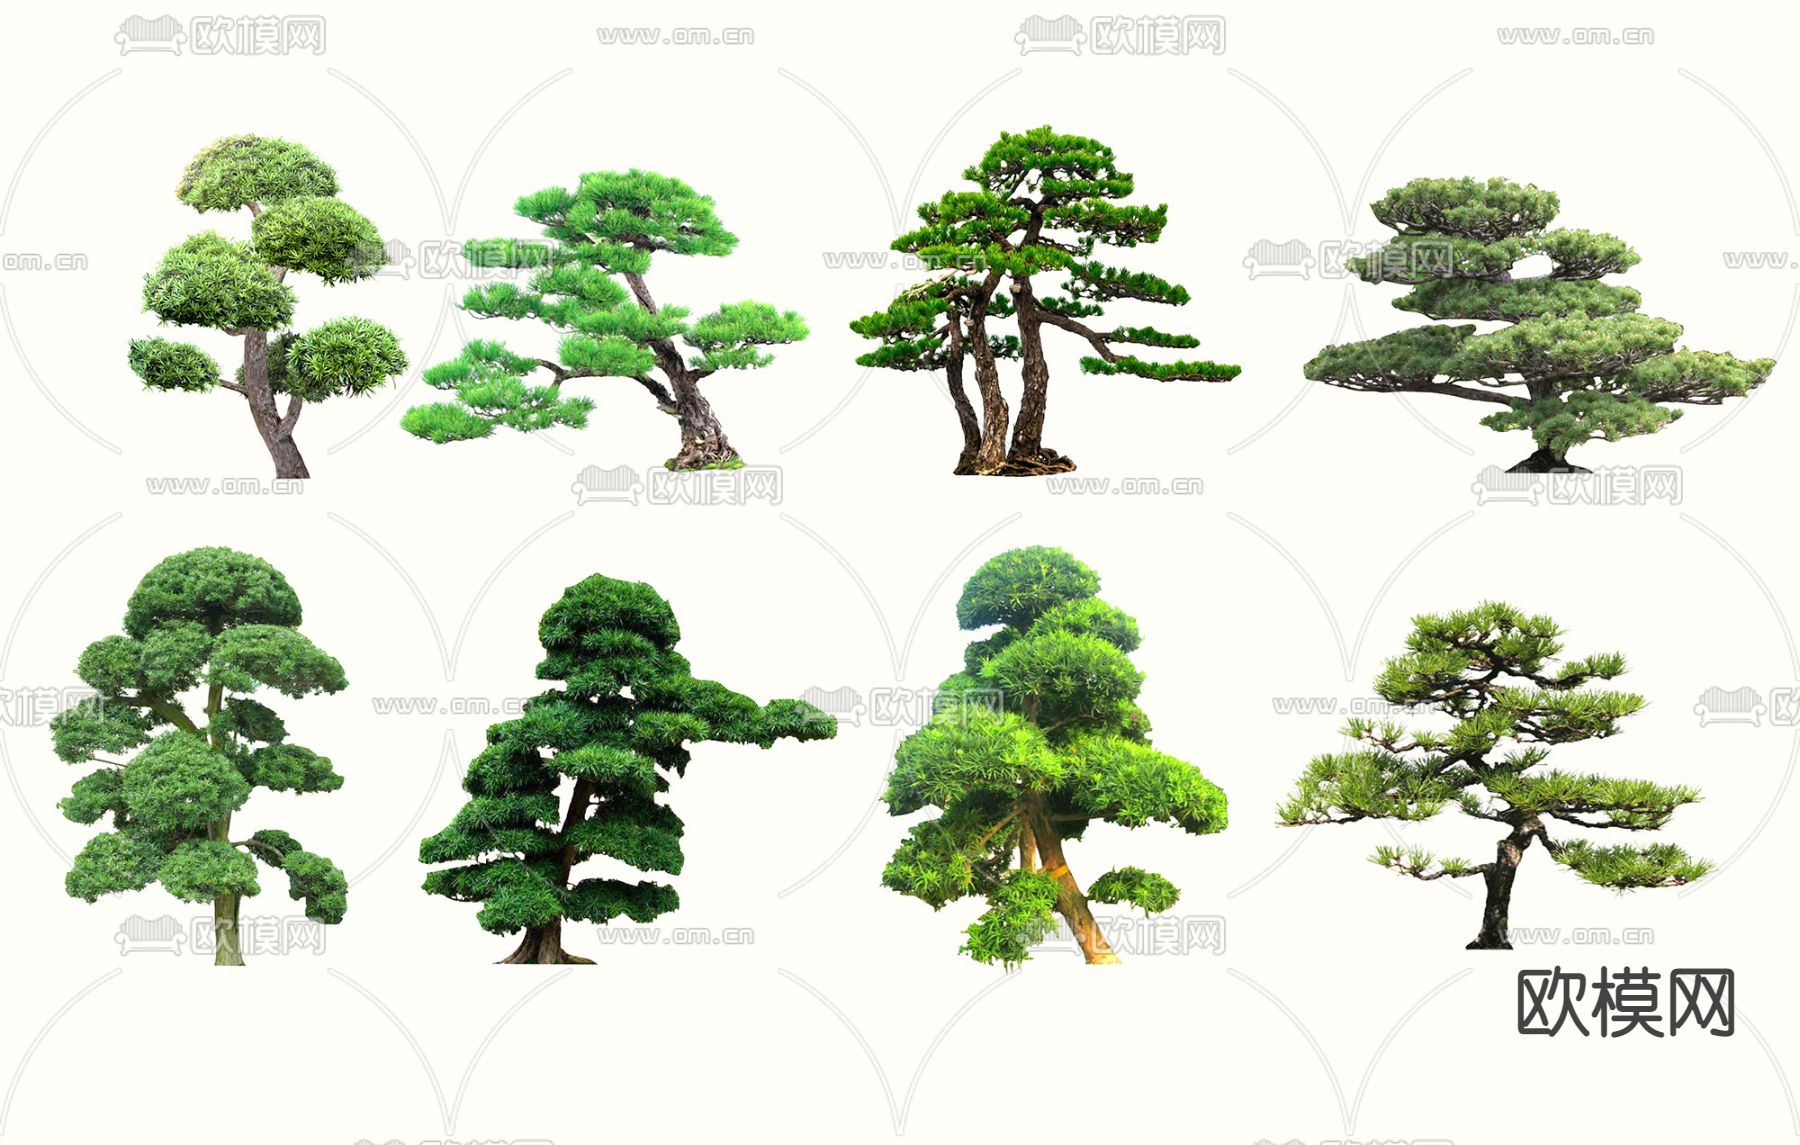 松树种类及图片介绍 _排行榜大全